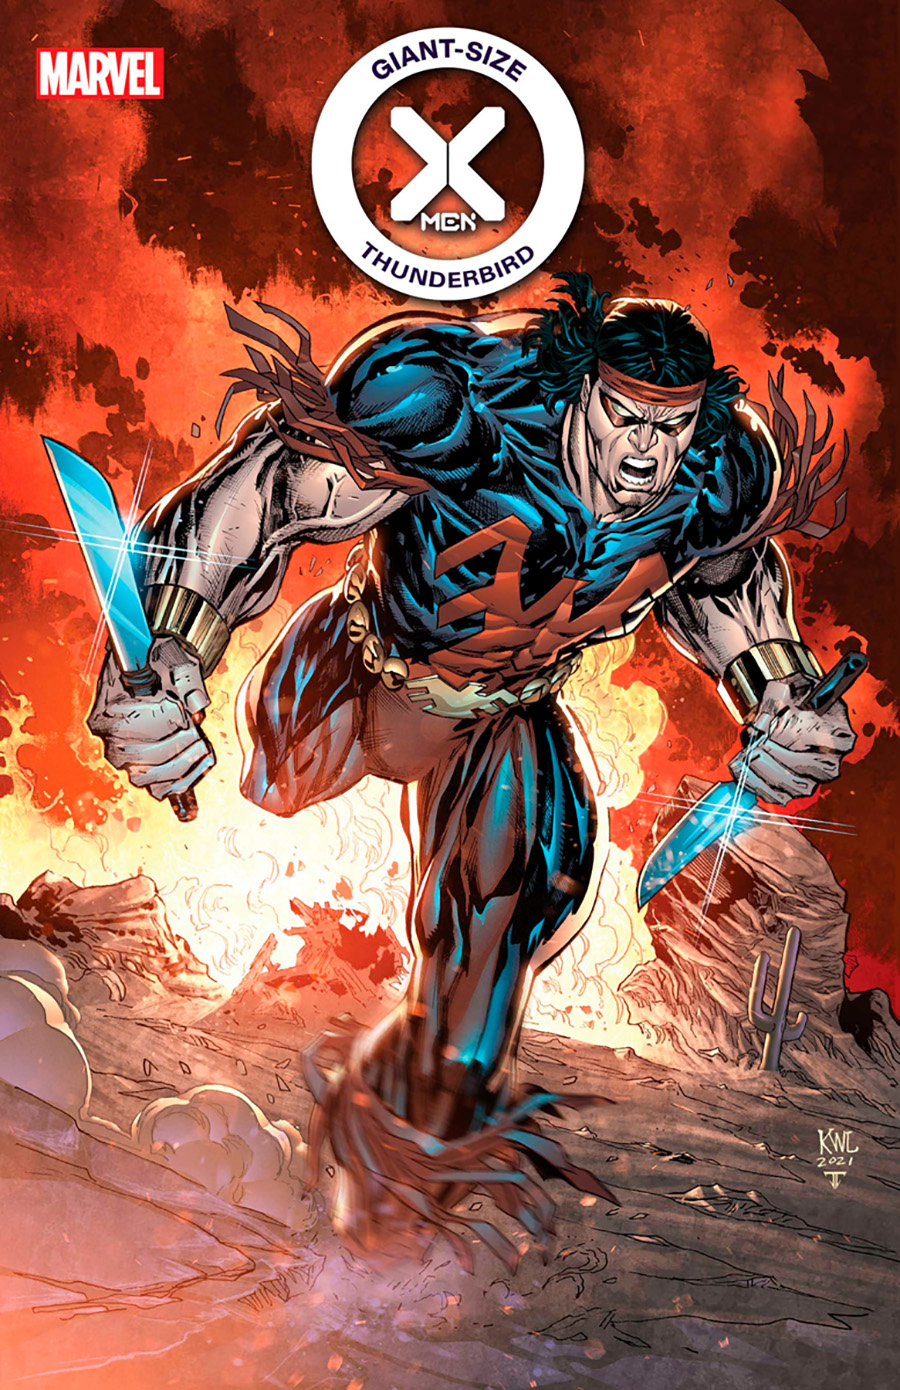 Giant Size X-Men: Thunderbird #1